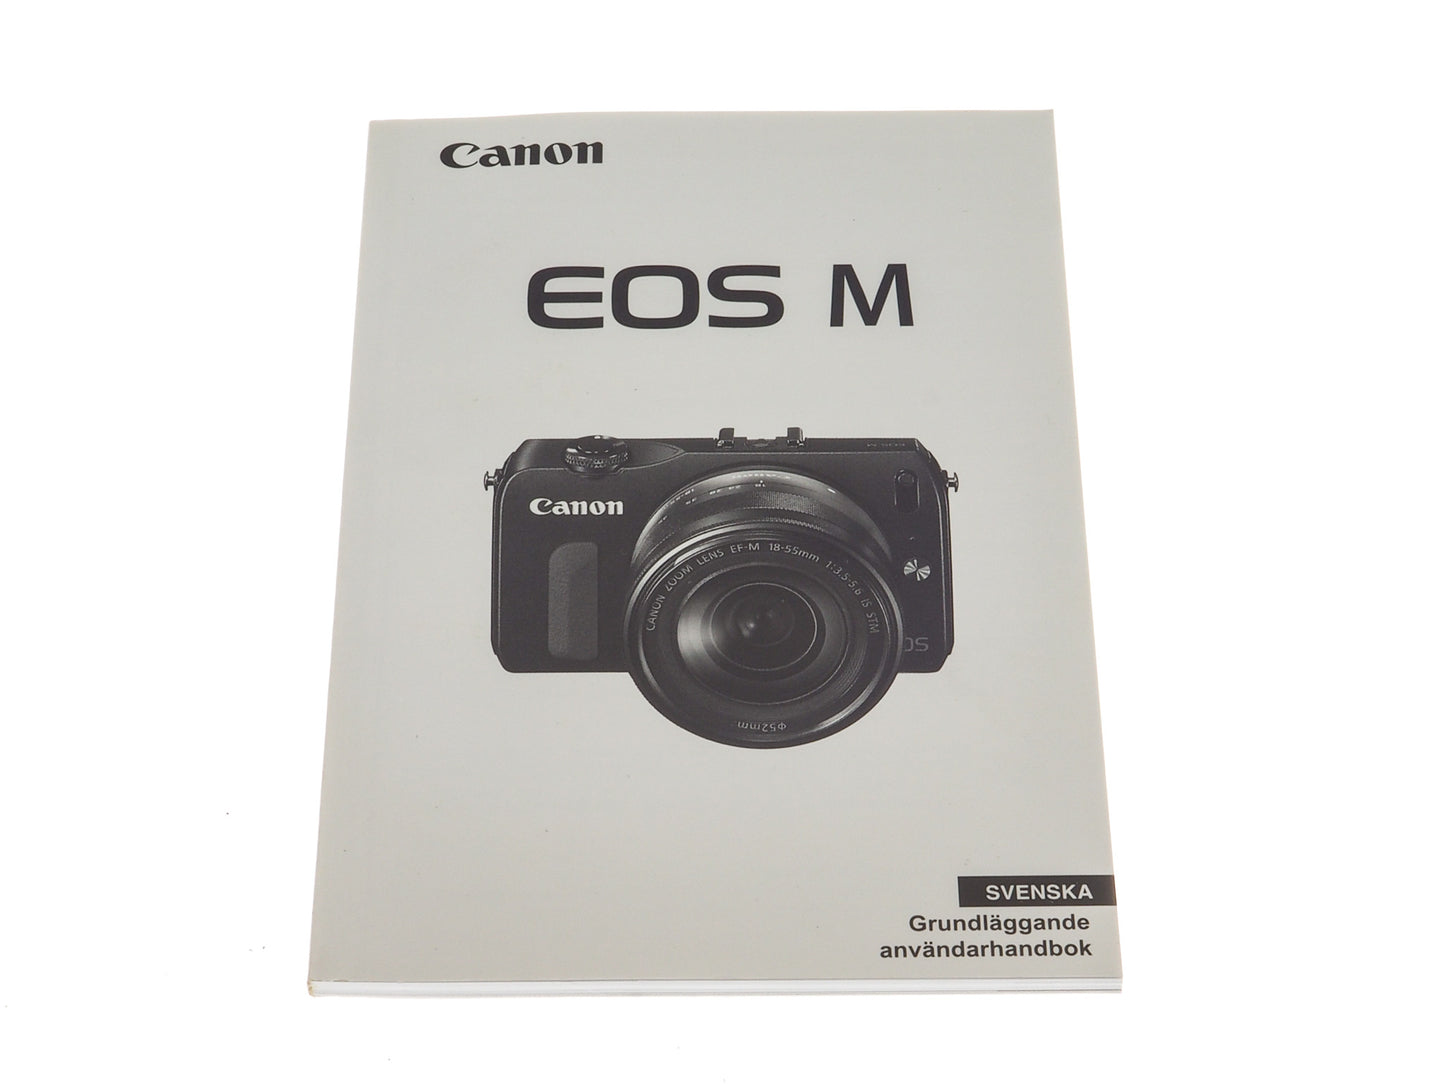 Canon EOS M Manual